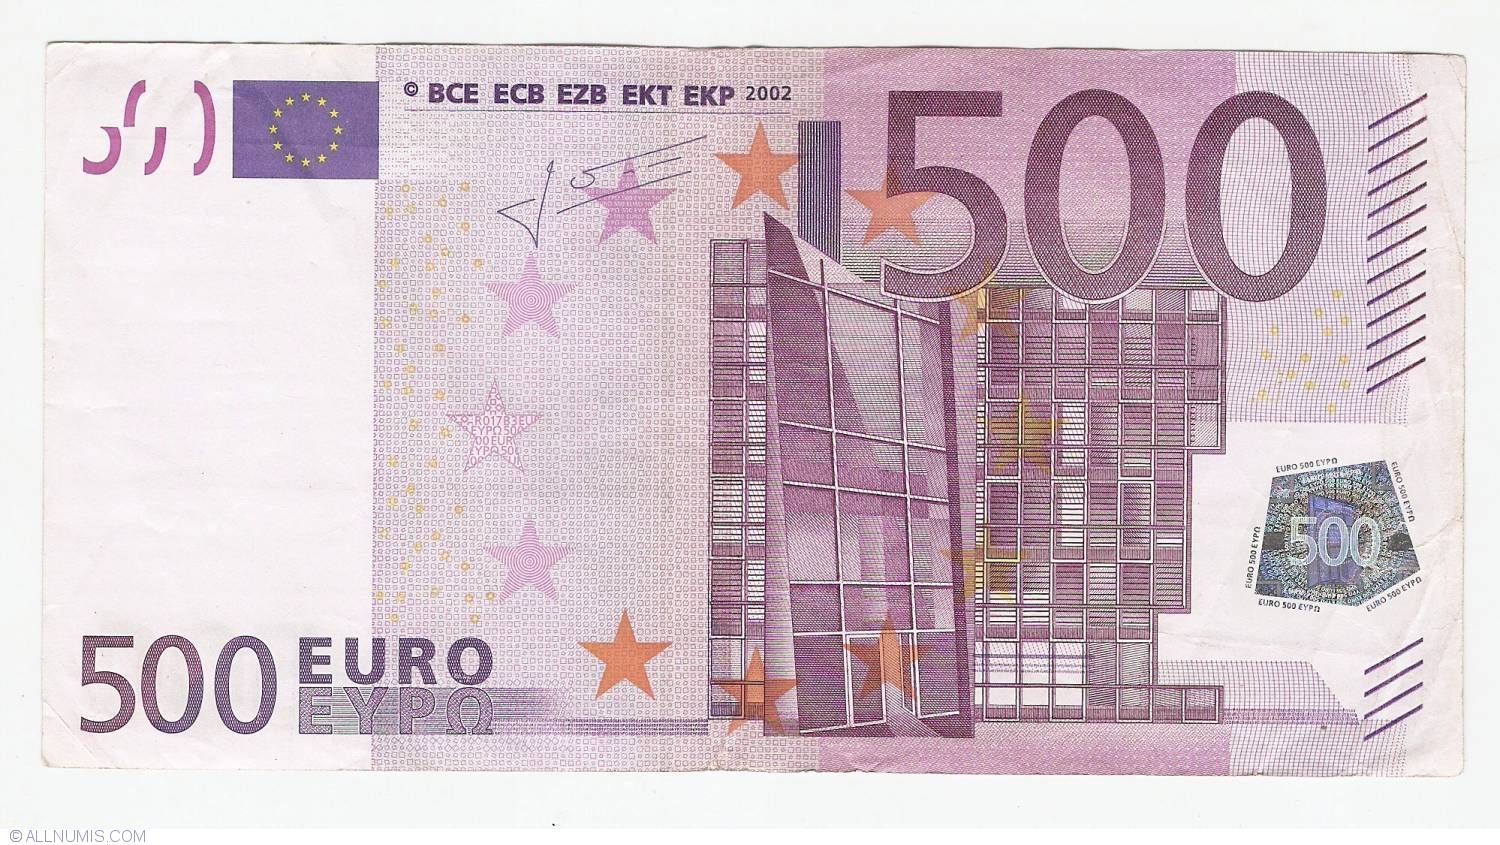 1000 евро это сколько